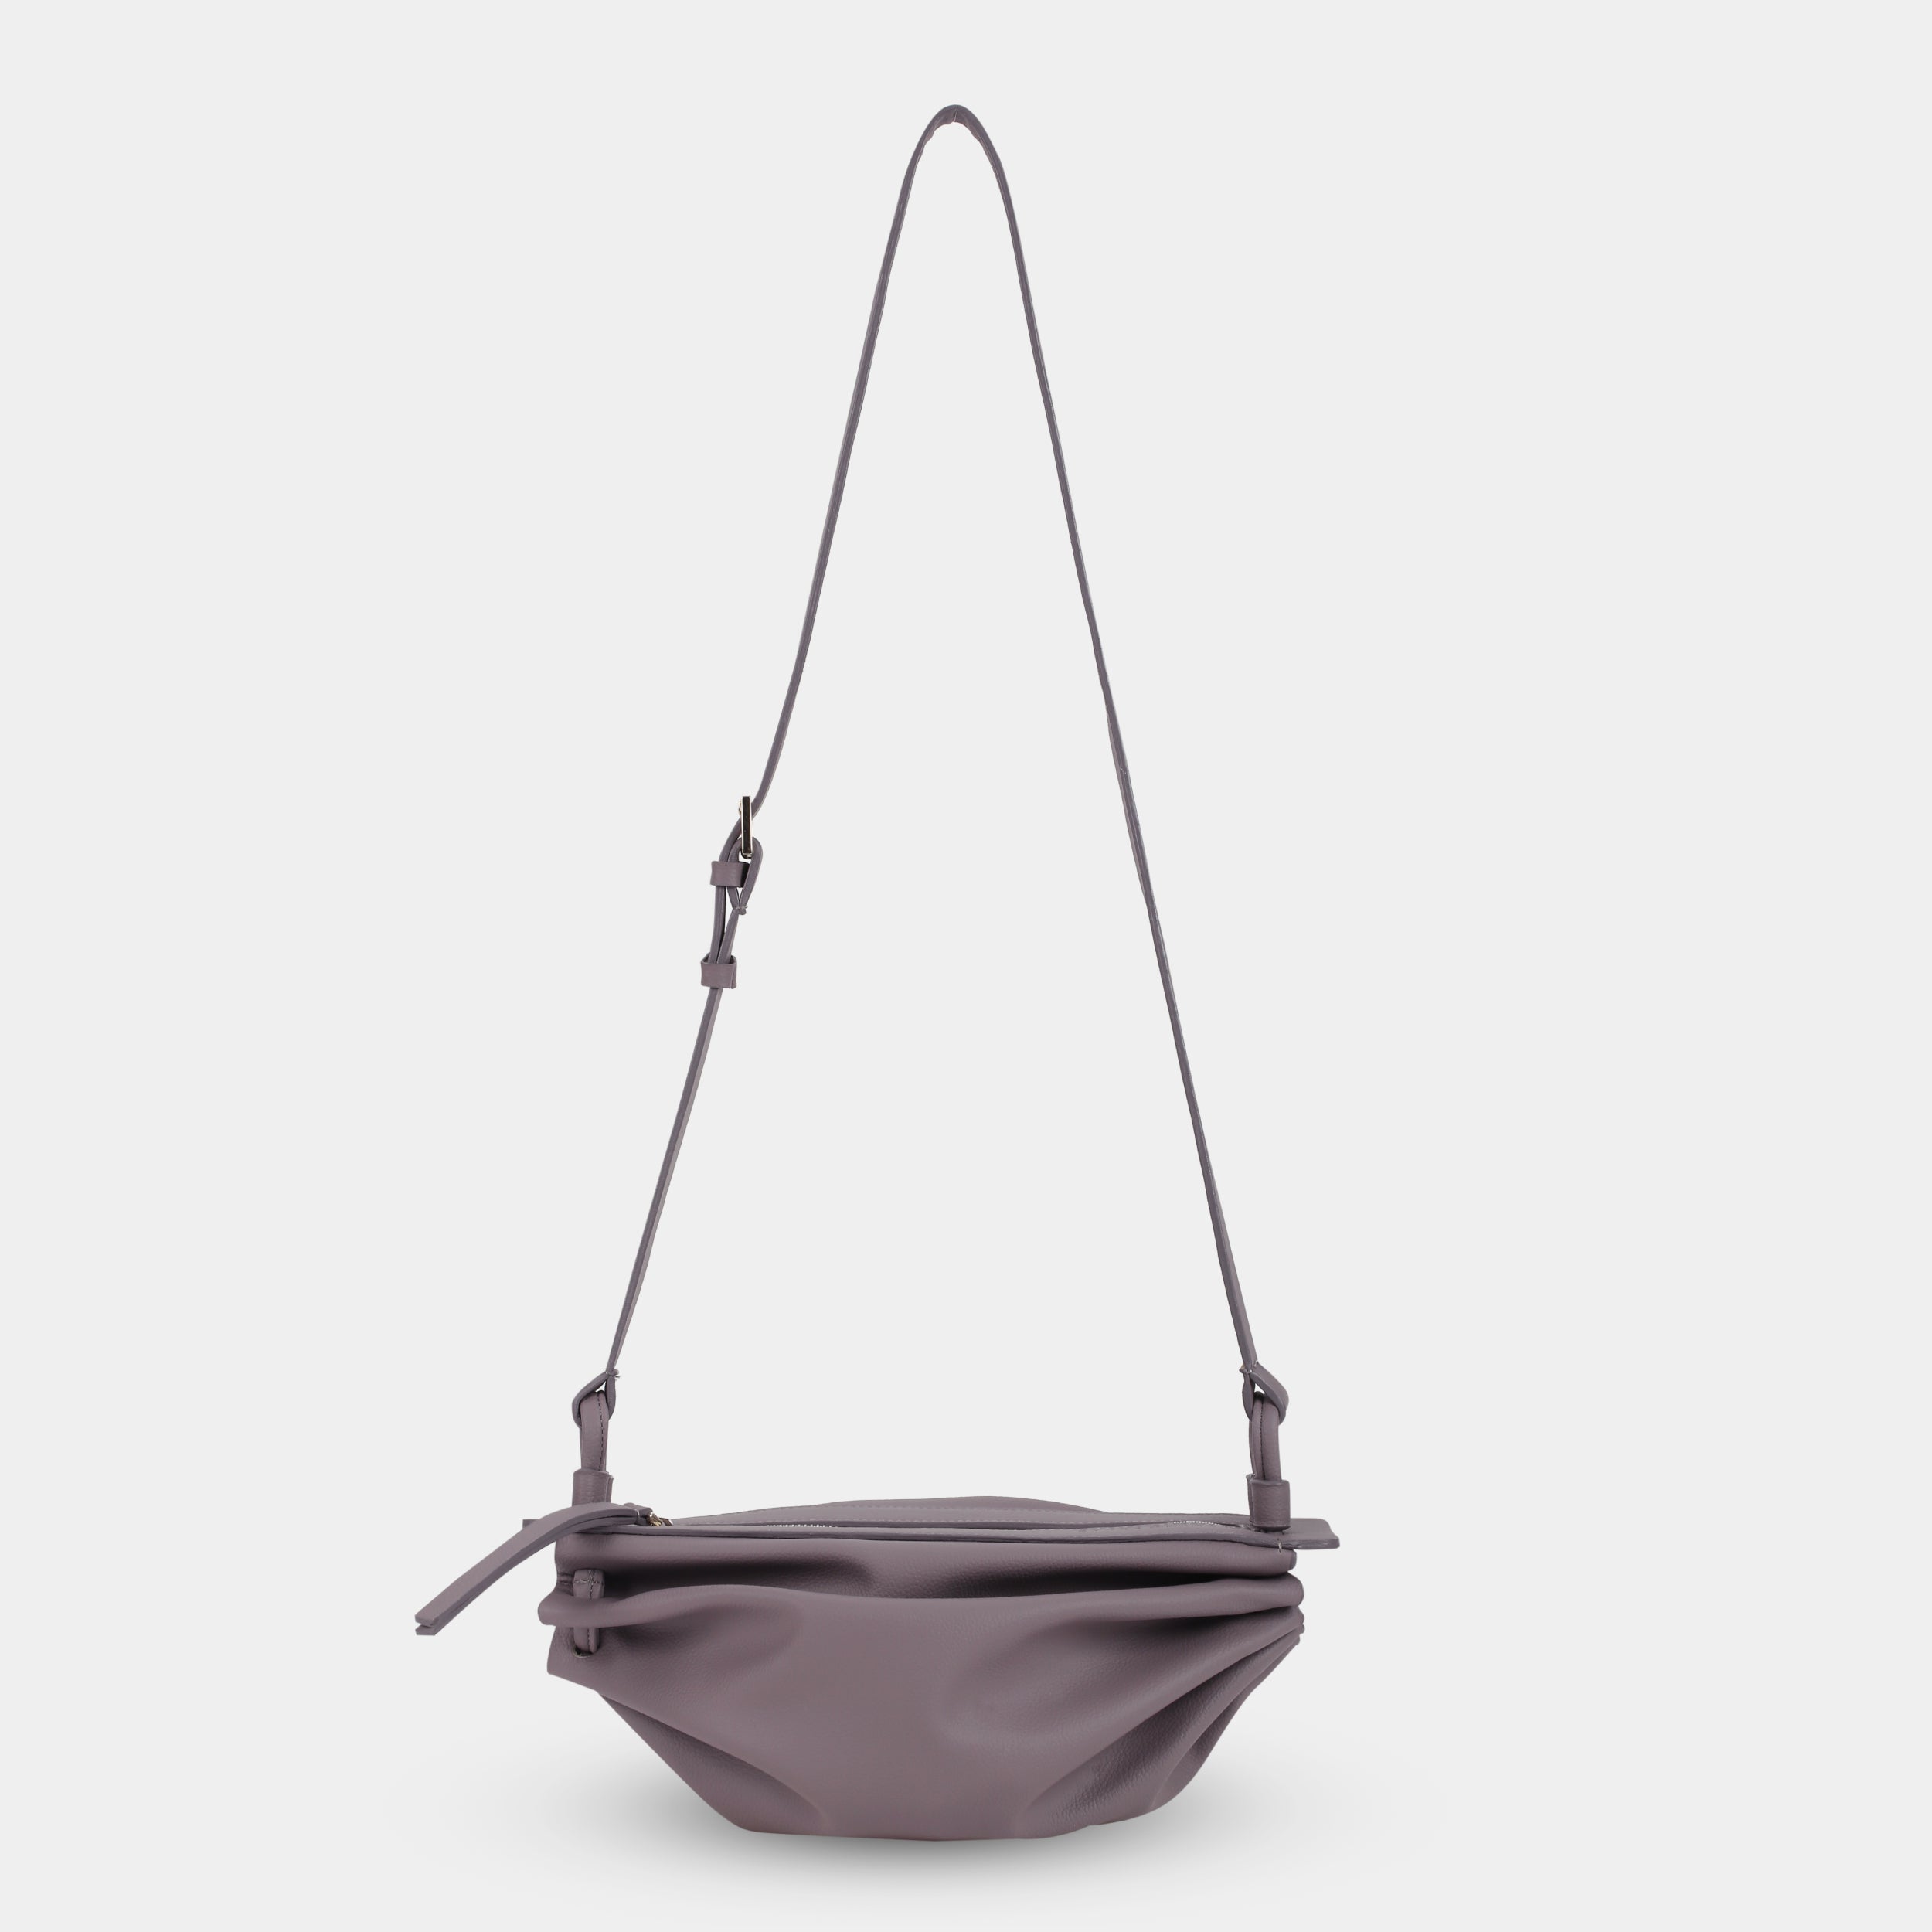 BOAT bag large size (M) smoke purple